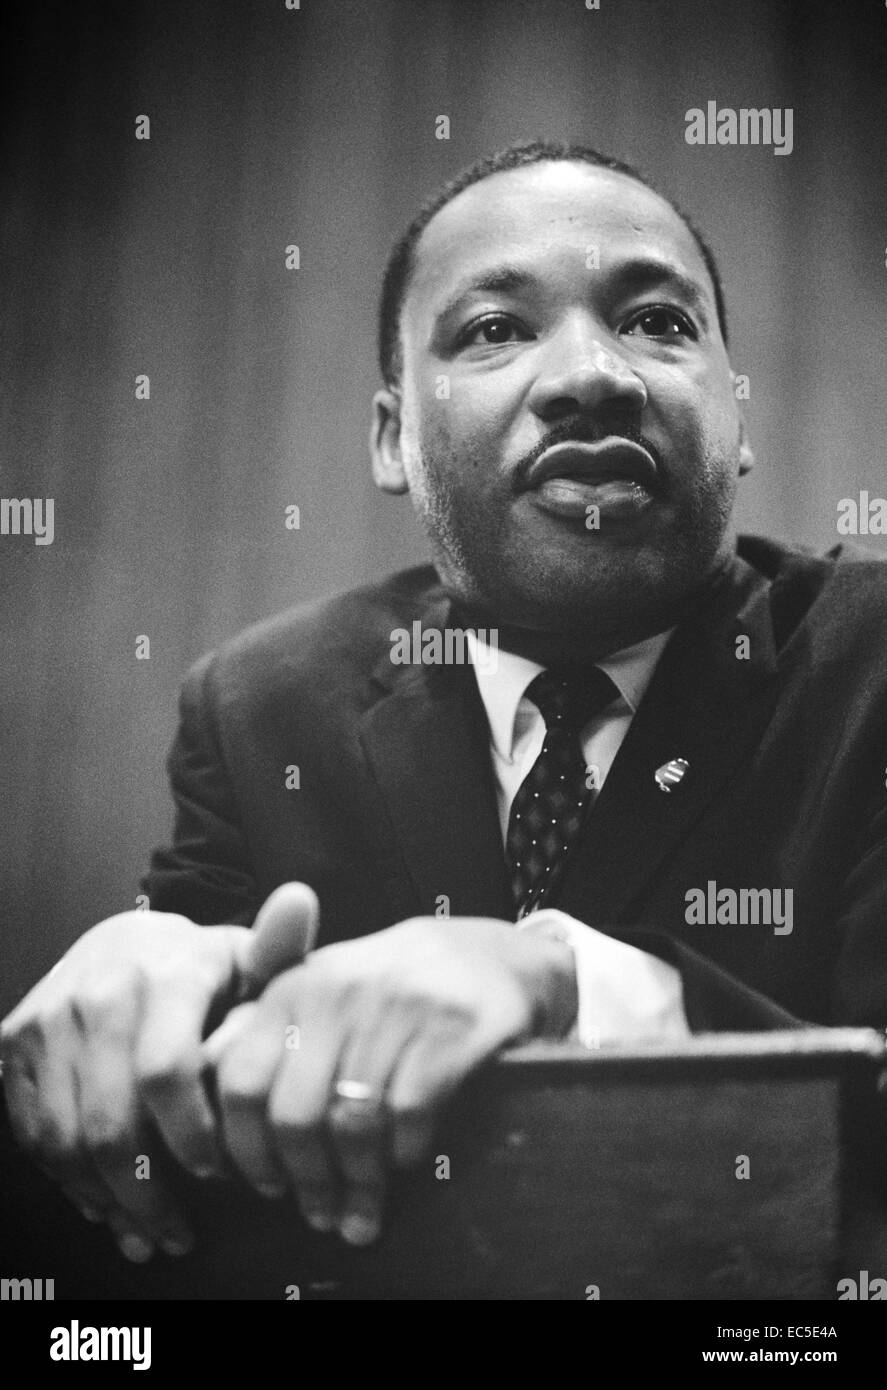 Martin Luther King Jr. conferenza stampa. fotografia mostra testa e spalle ritratto del re appoggiato su di un leggio. 1964 mar. 26. trikosko, Marion s., fotografo. Foto Stock